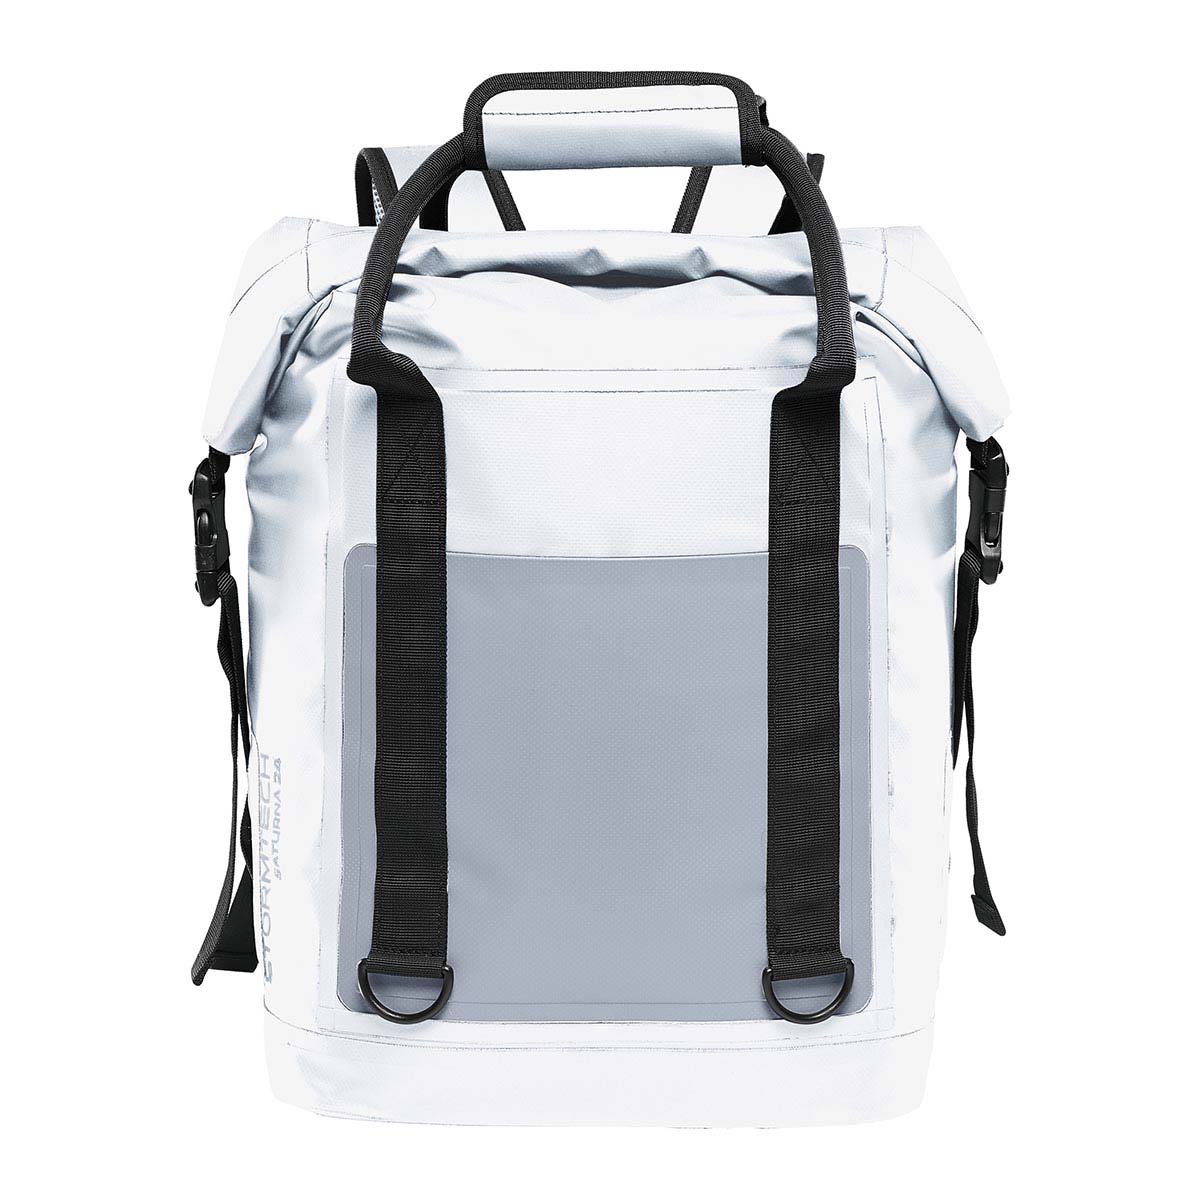 Saturna Cooler Bag - Stormtech USA Retail